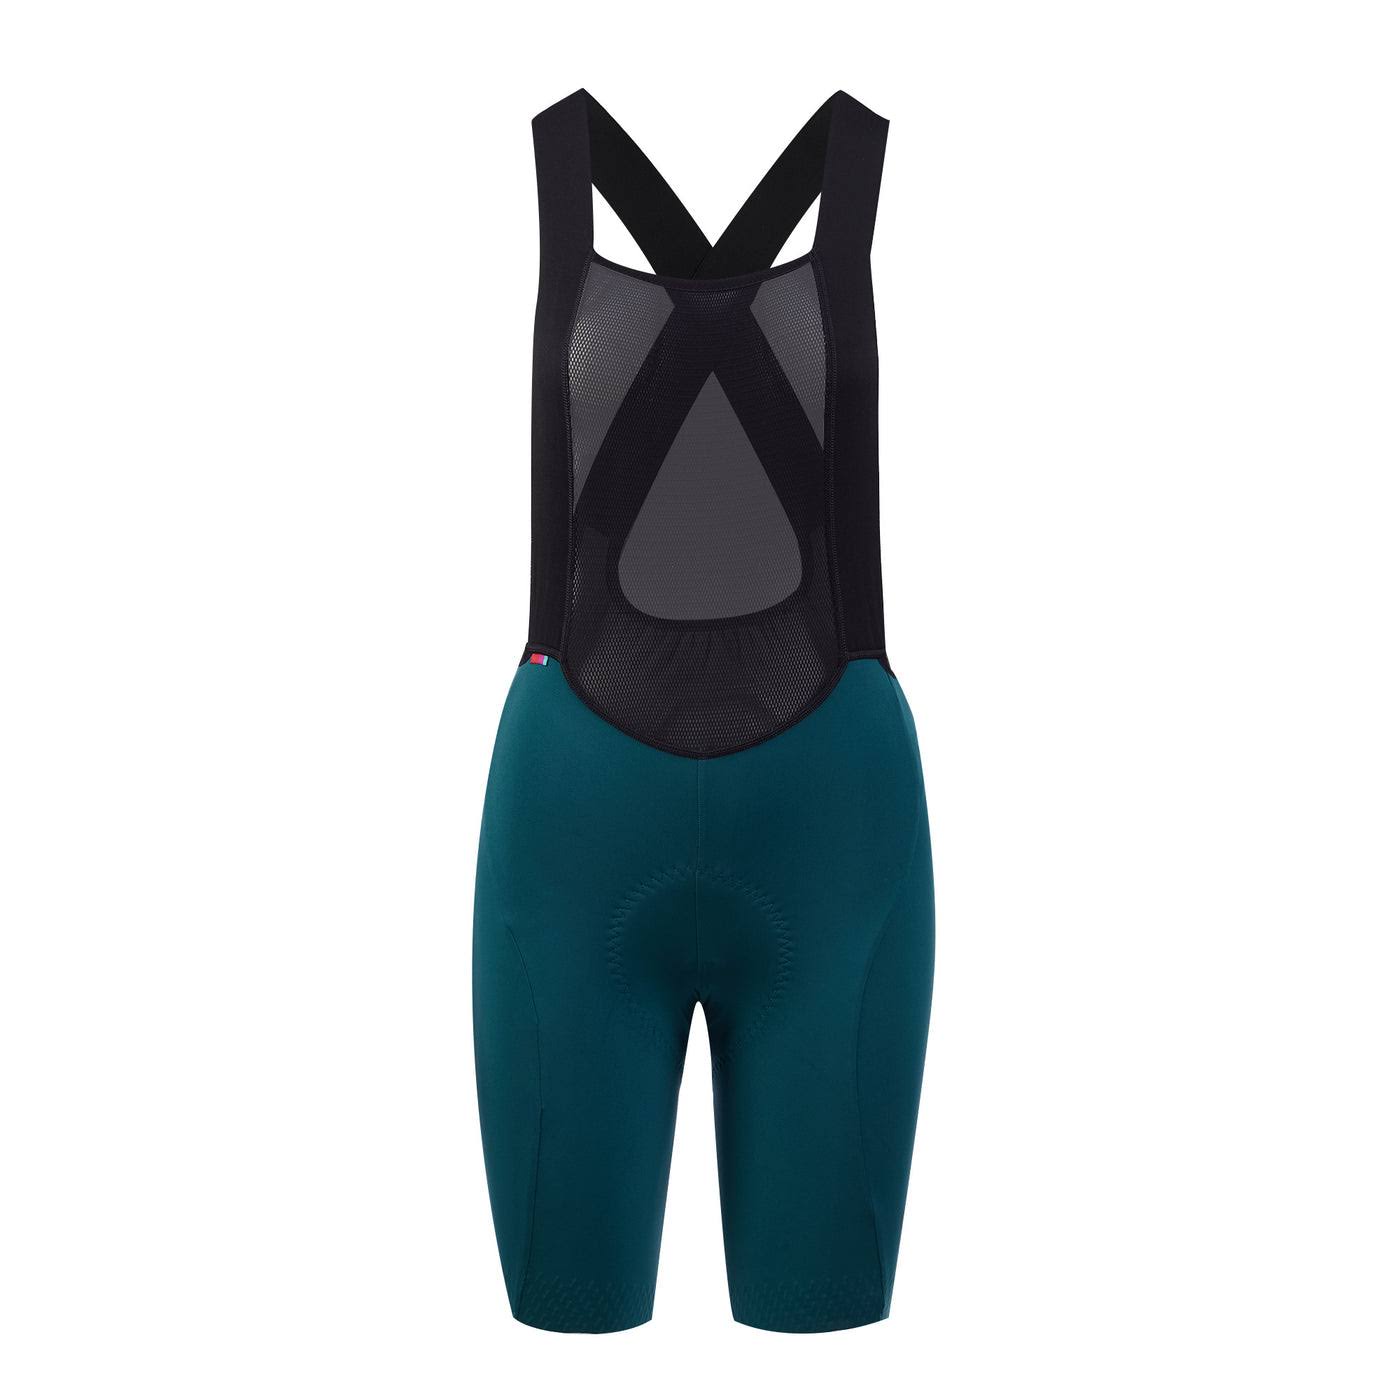 Velocio Luxe Bib Shorts (Women's) - Deep Sea - Small